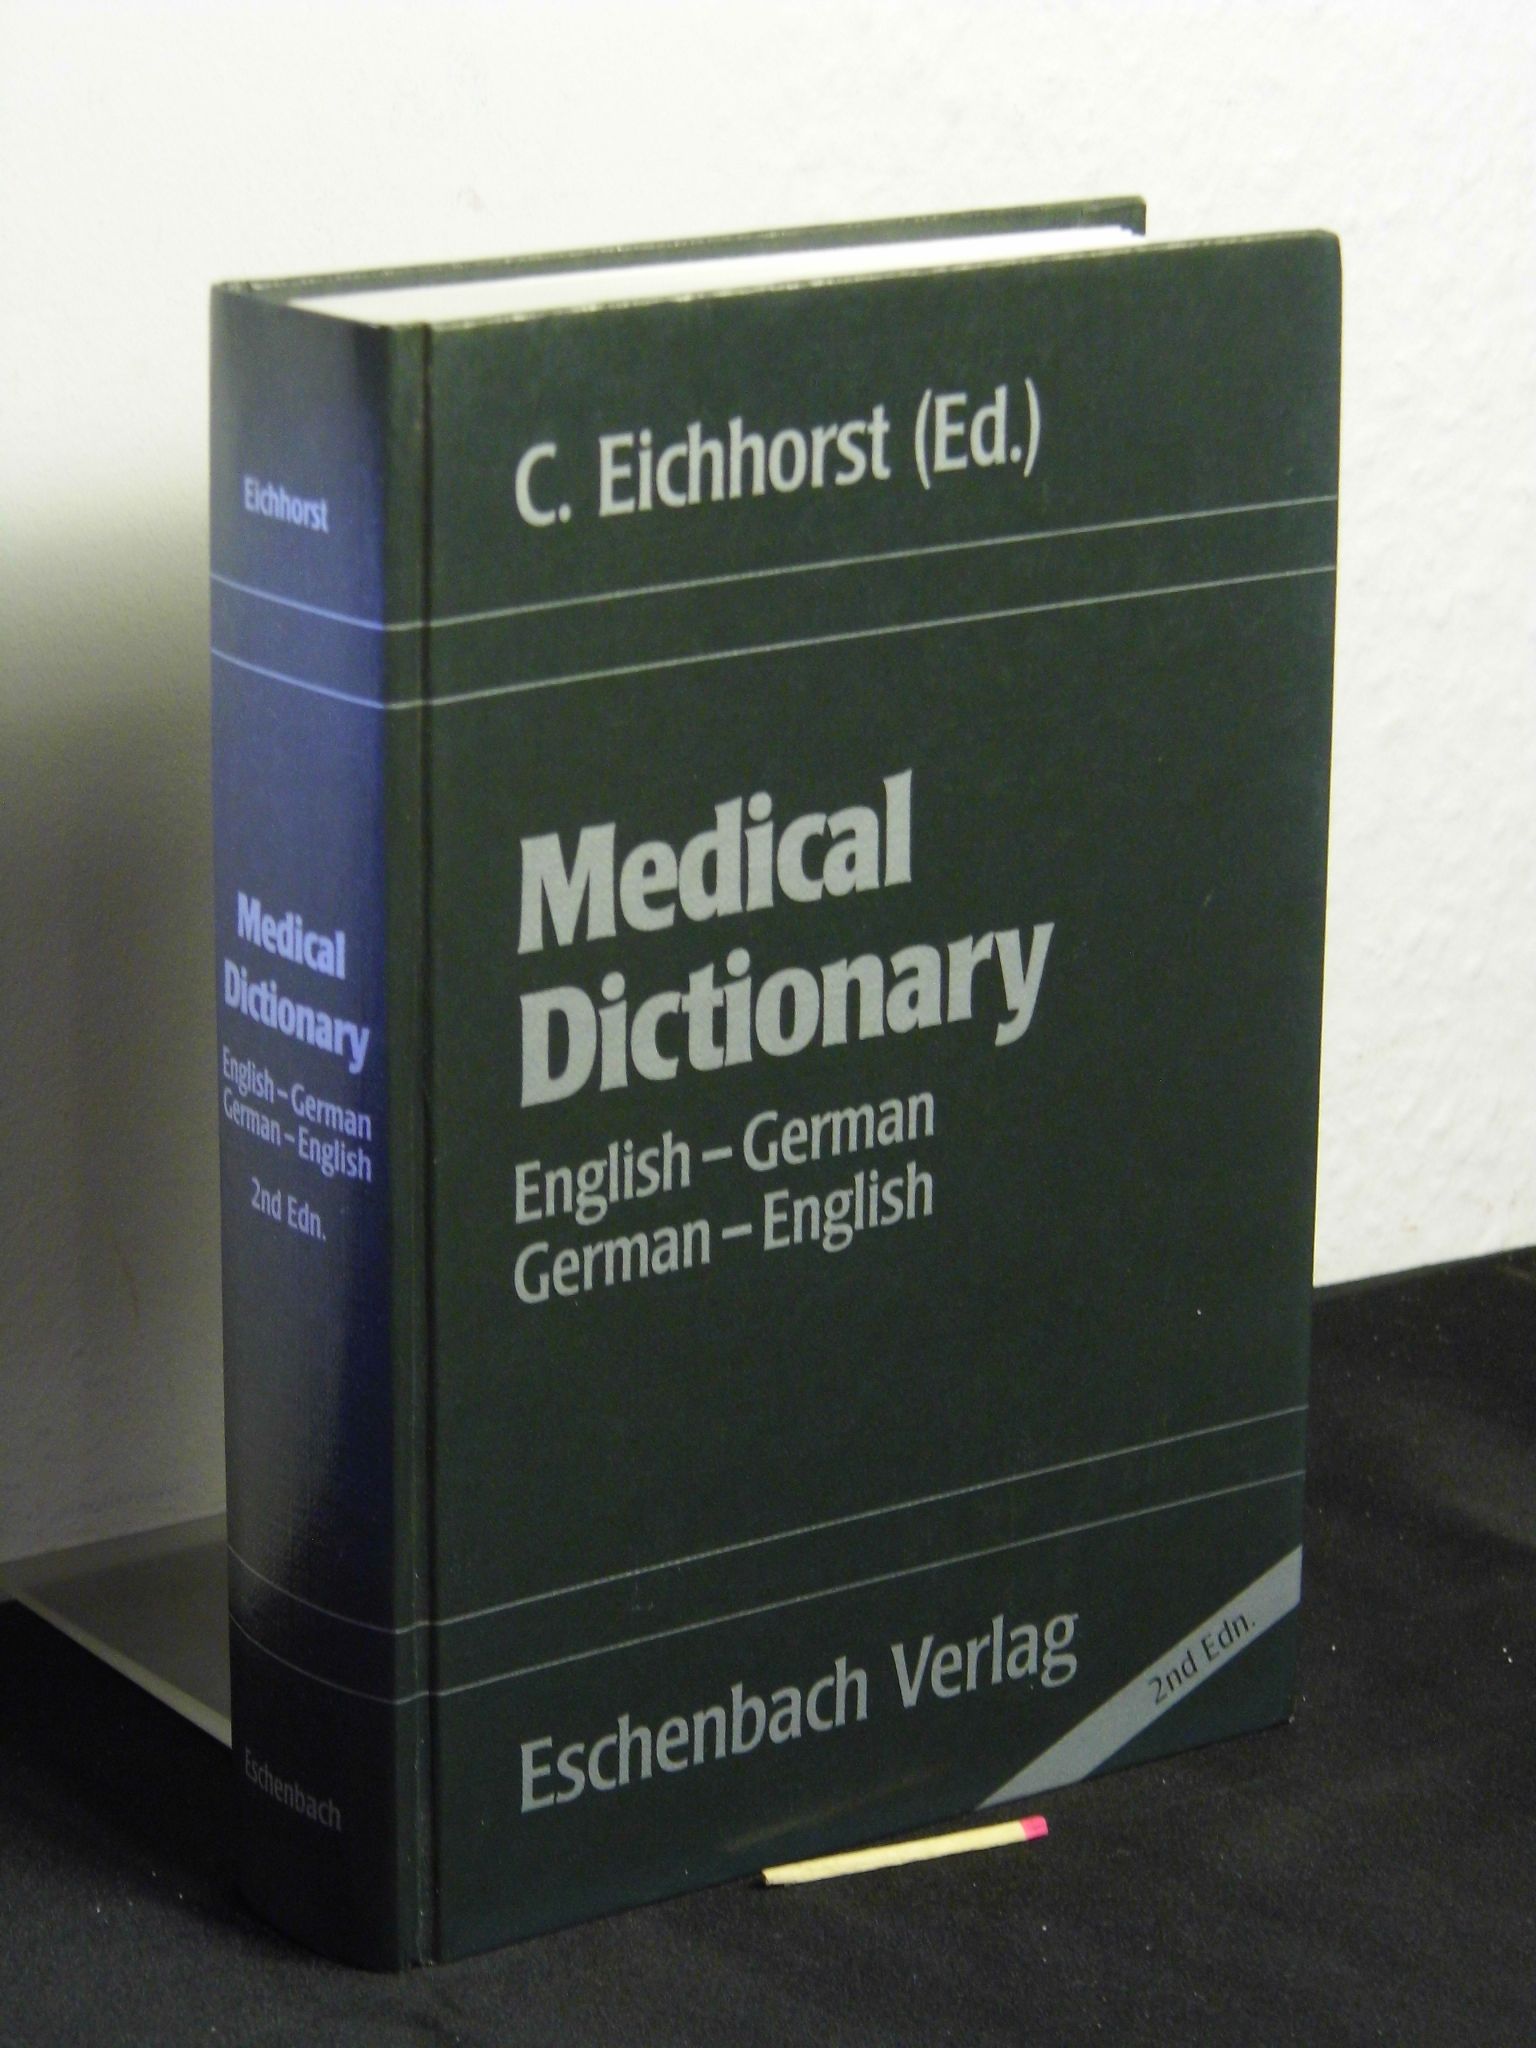 Medical dictionary English-German, German-English = Medicinisches Wörterbuch englisch-deutsch, deutsch-englisch -  second edition 2. Auflage - Eichhorst, C. (Herausgeber) -